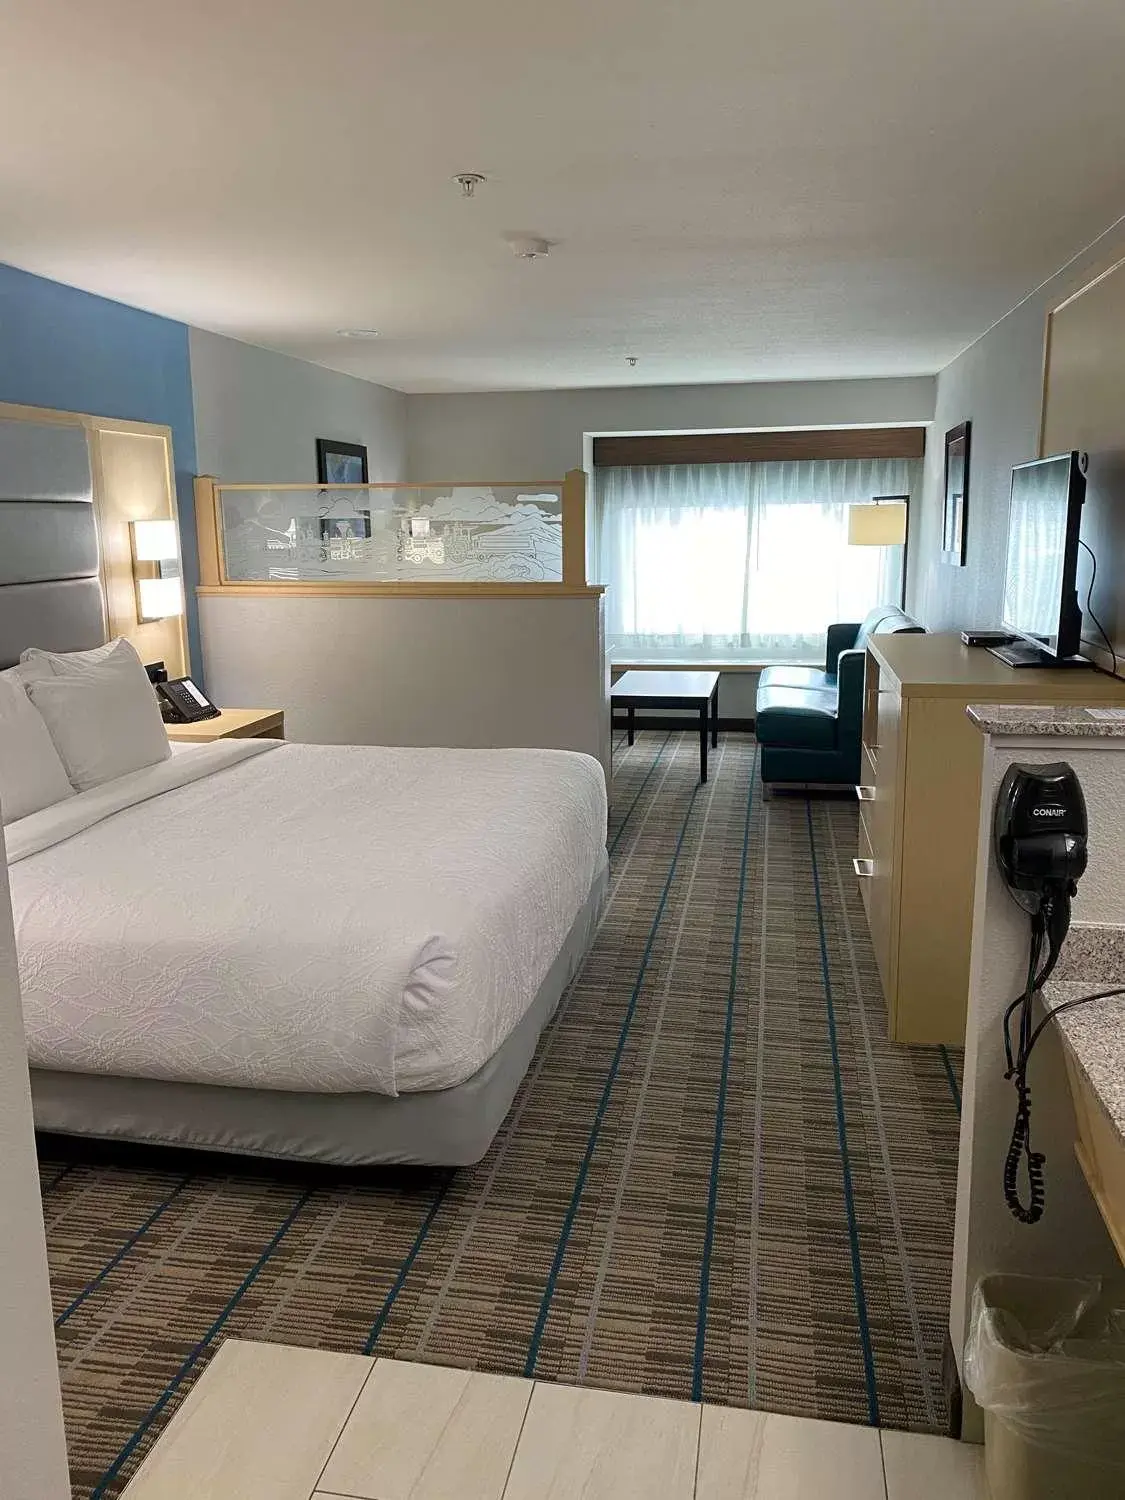 Bedroom, Bed in Best Western Brigham City Inn & Suites